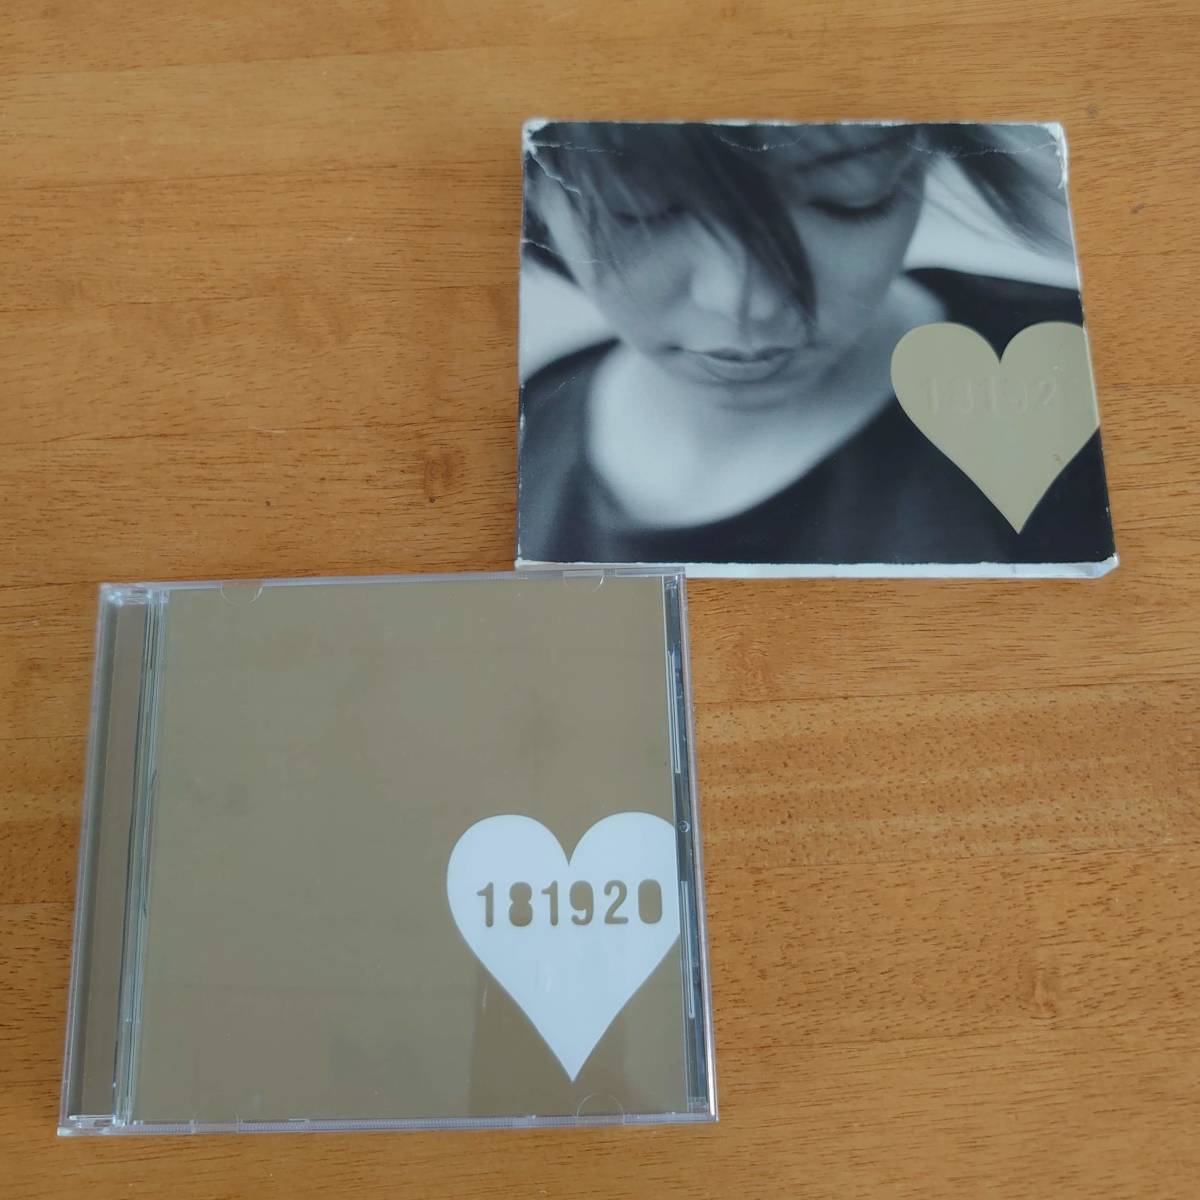 安室奈美恵 / 181920 ベストアルバム 【CD】_画像1